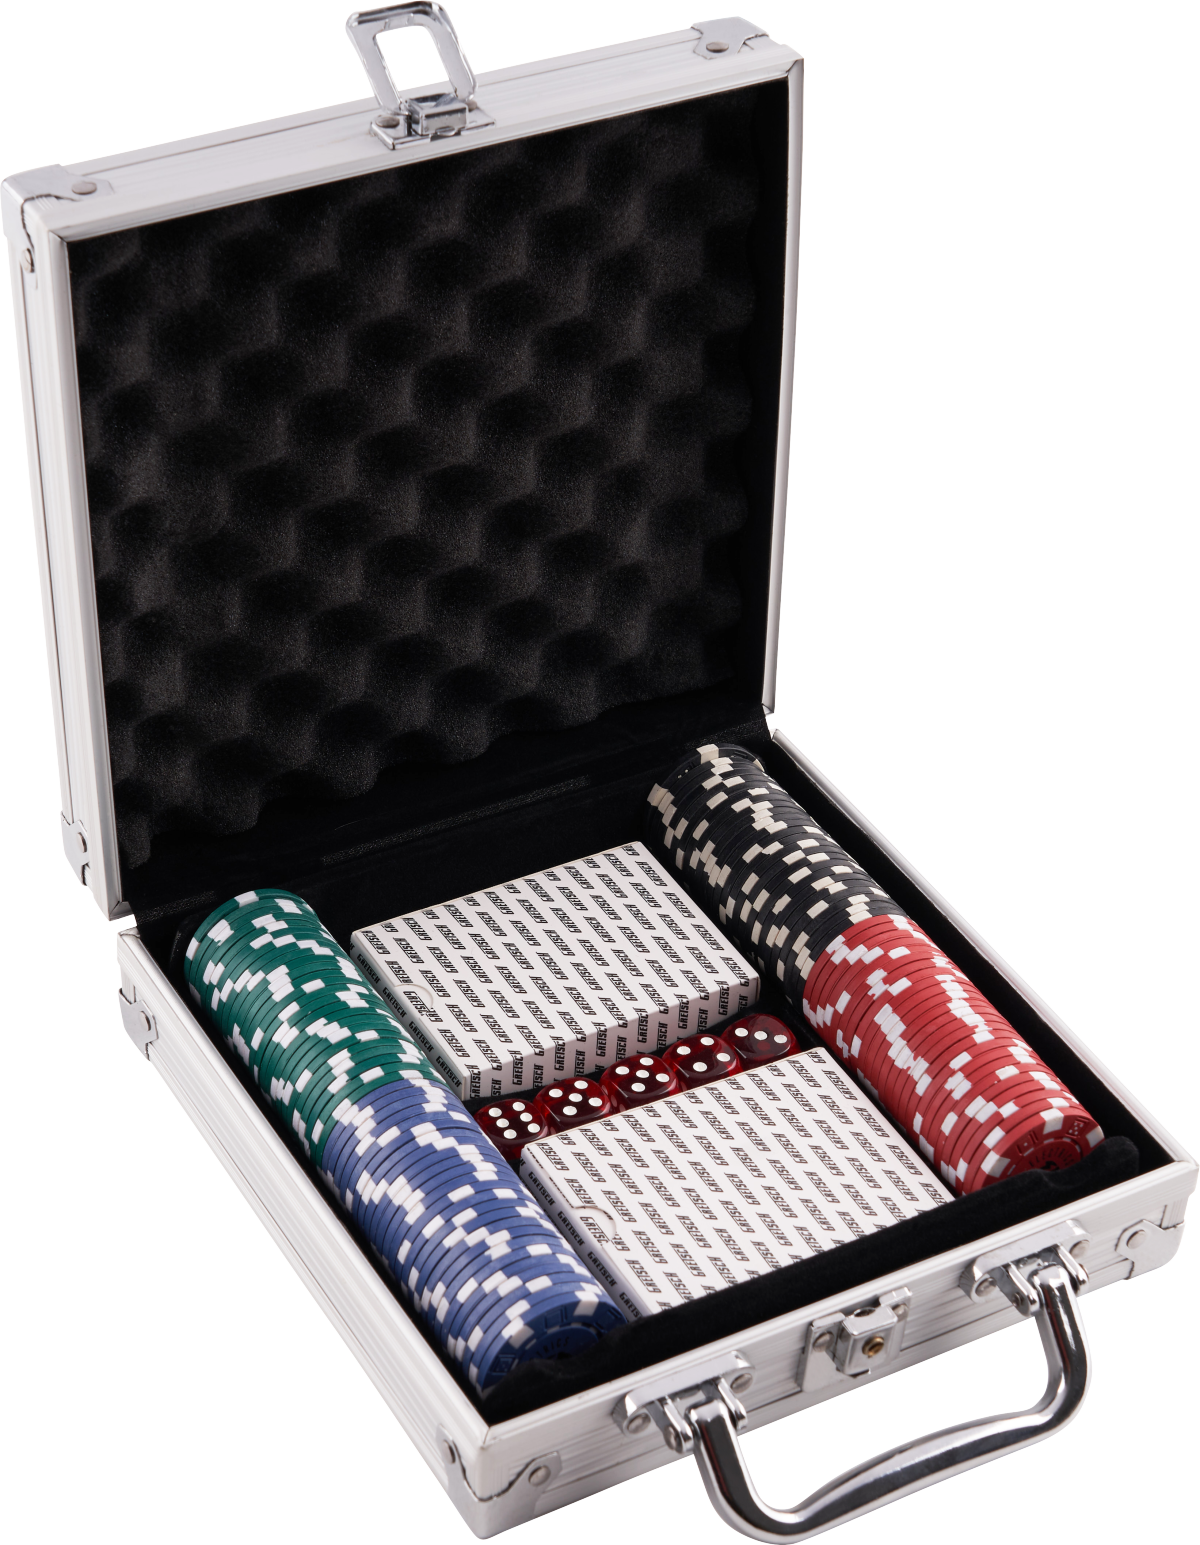 Gretsch High Roller Poker Set - Card game - Variation 1